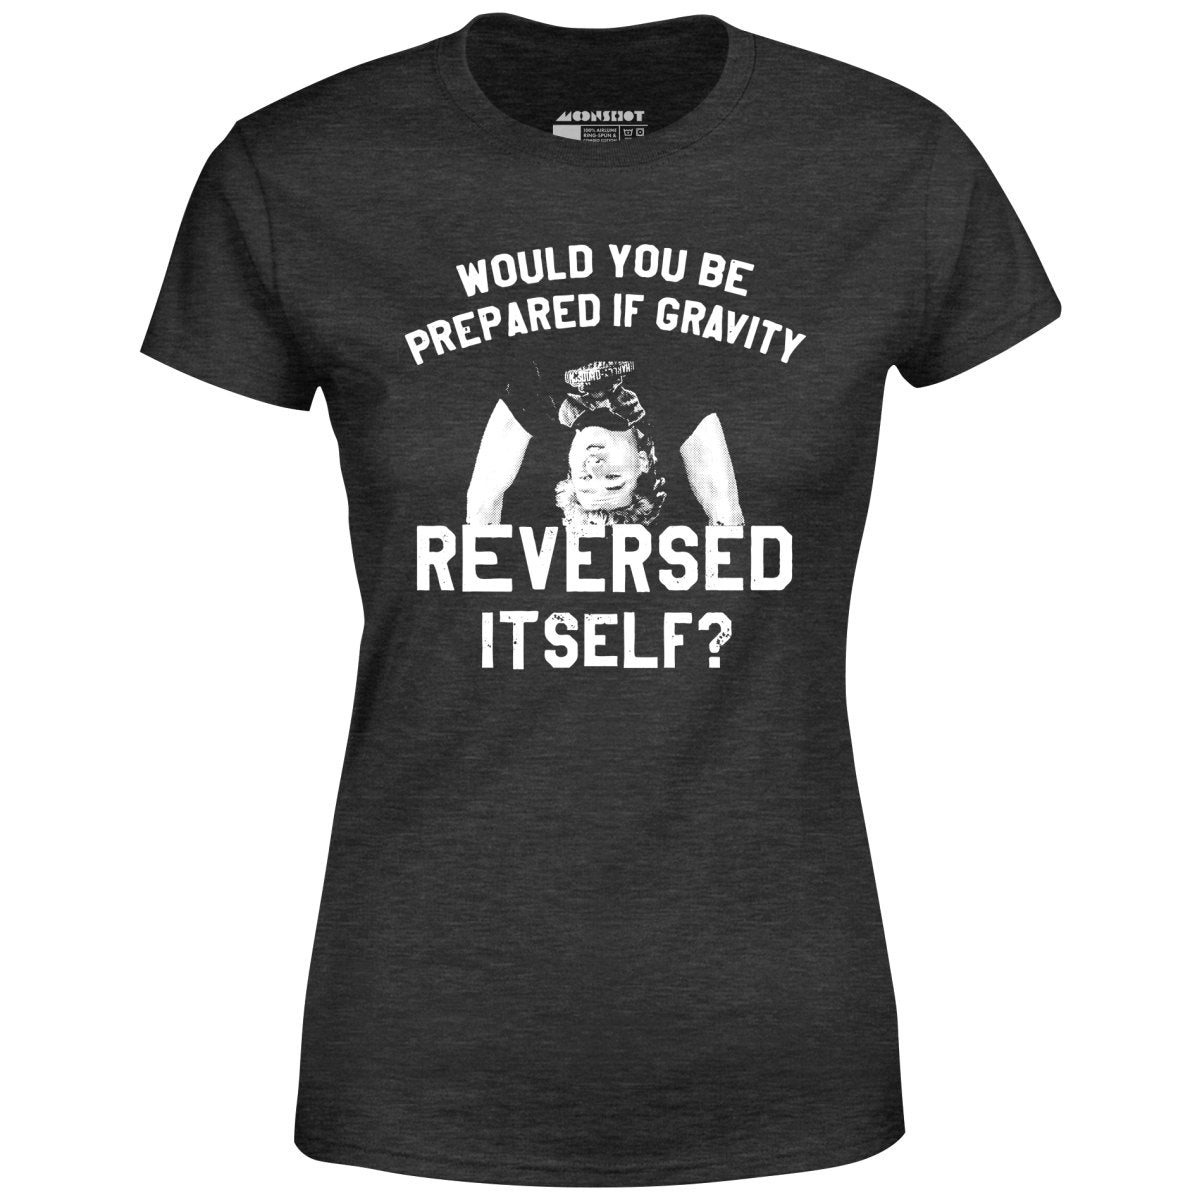 Real Genius - If Gravity Reversed Itself - Women's T-Shirt